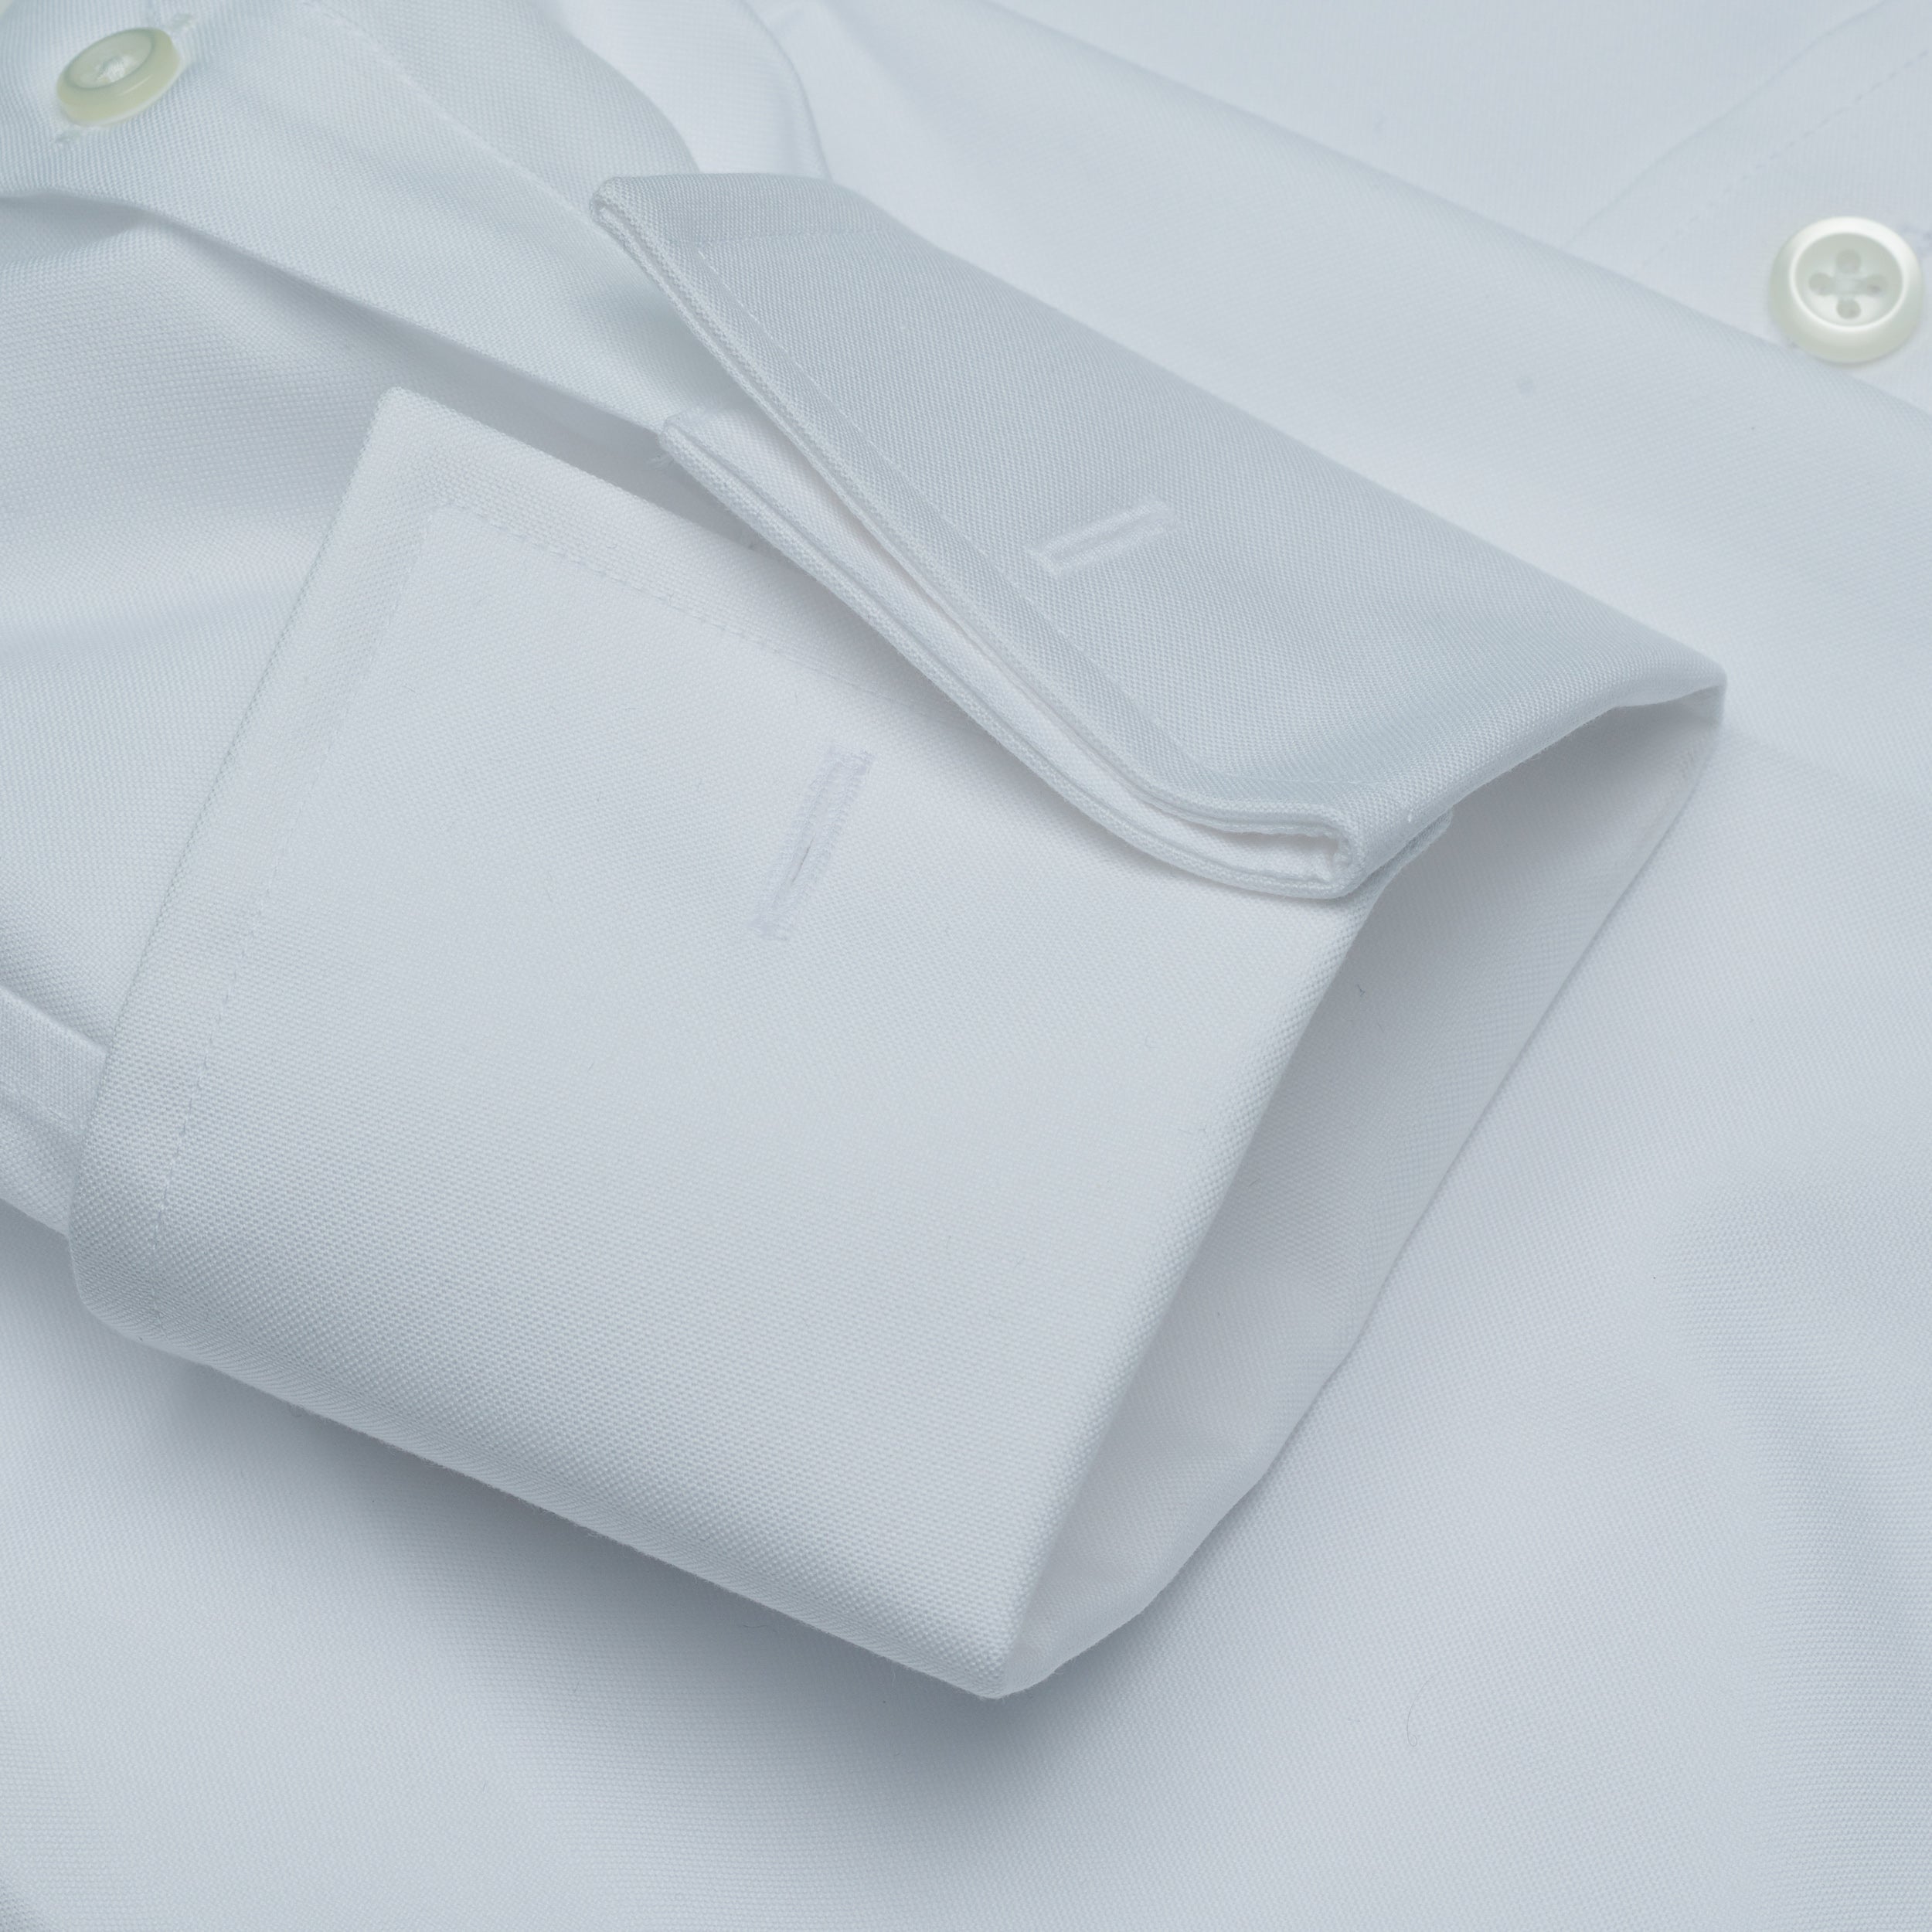 011 SC - White French Cuff Spread Collar